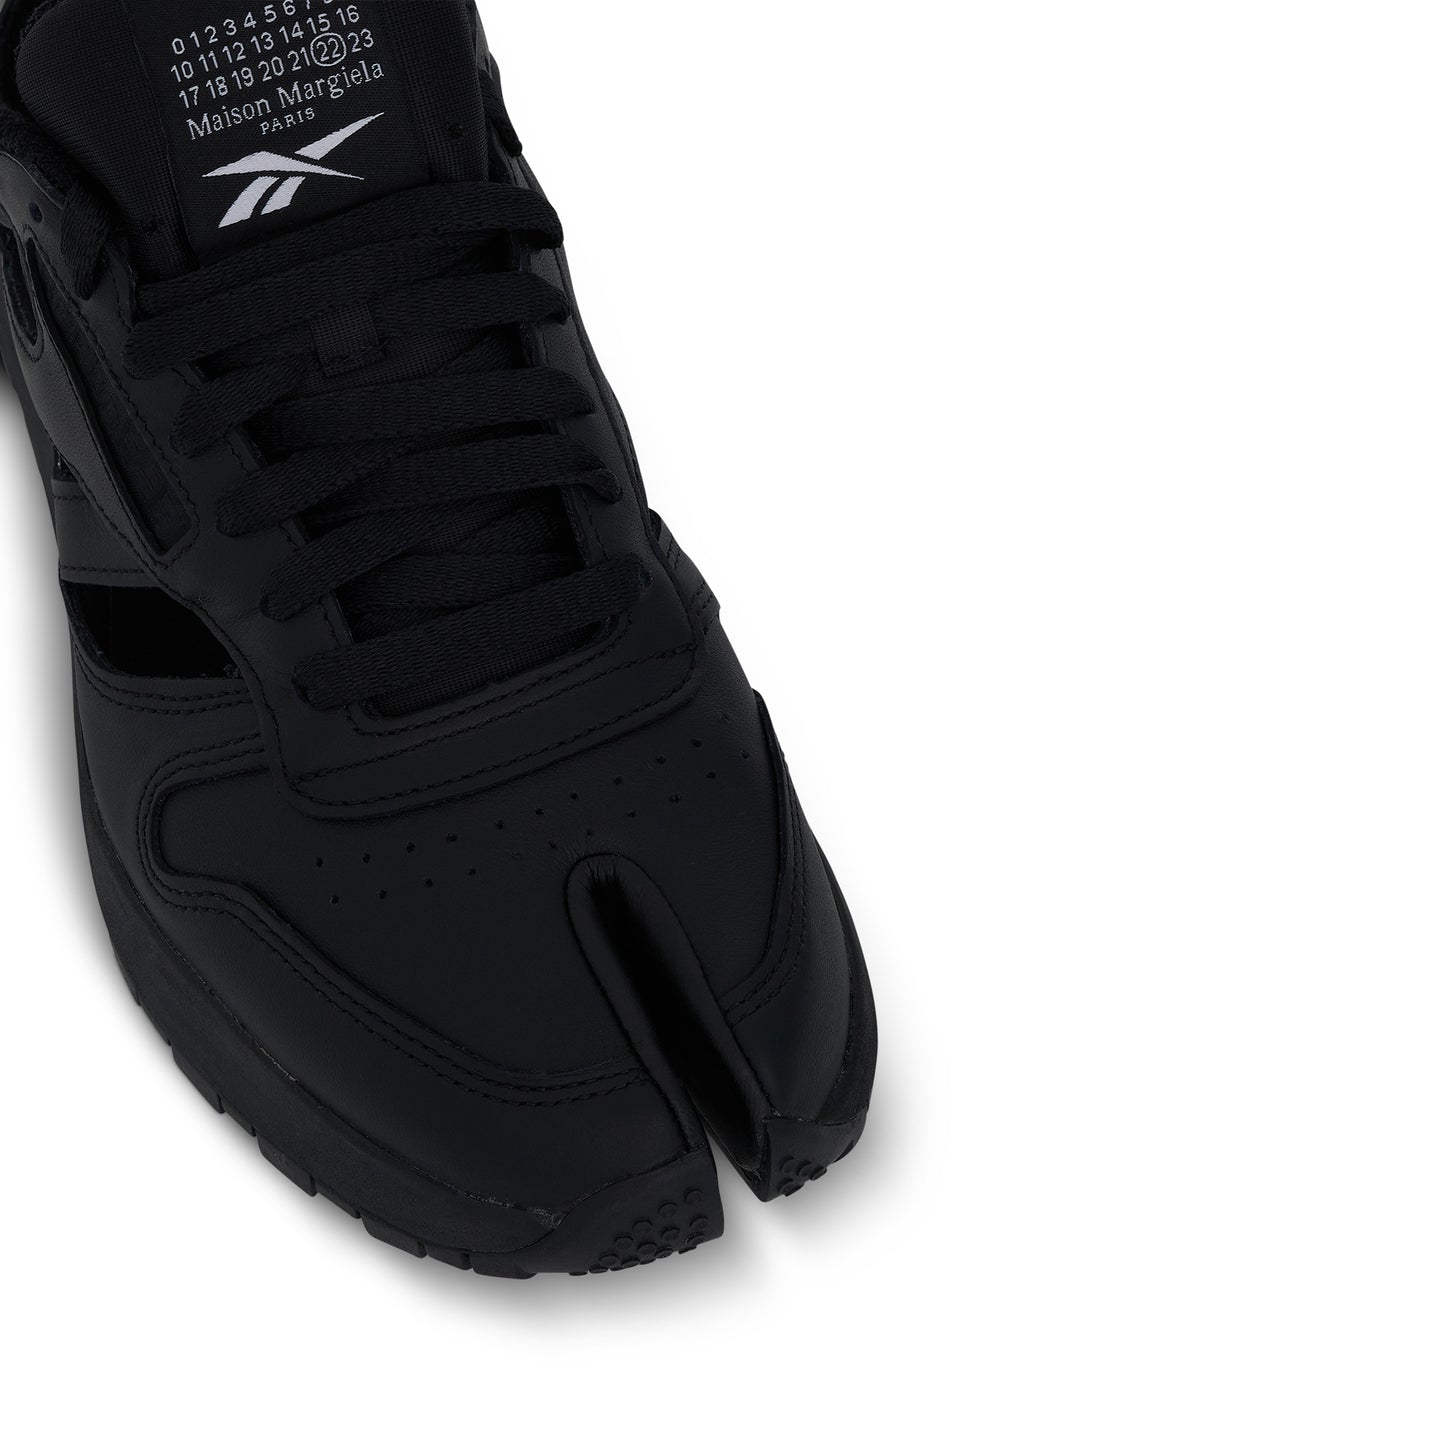 Maison Margiela x Reebok Tabi Gladiator Low Sneaker in Black